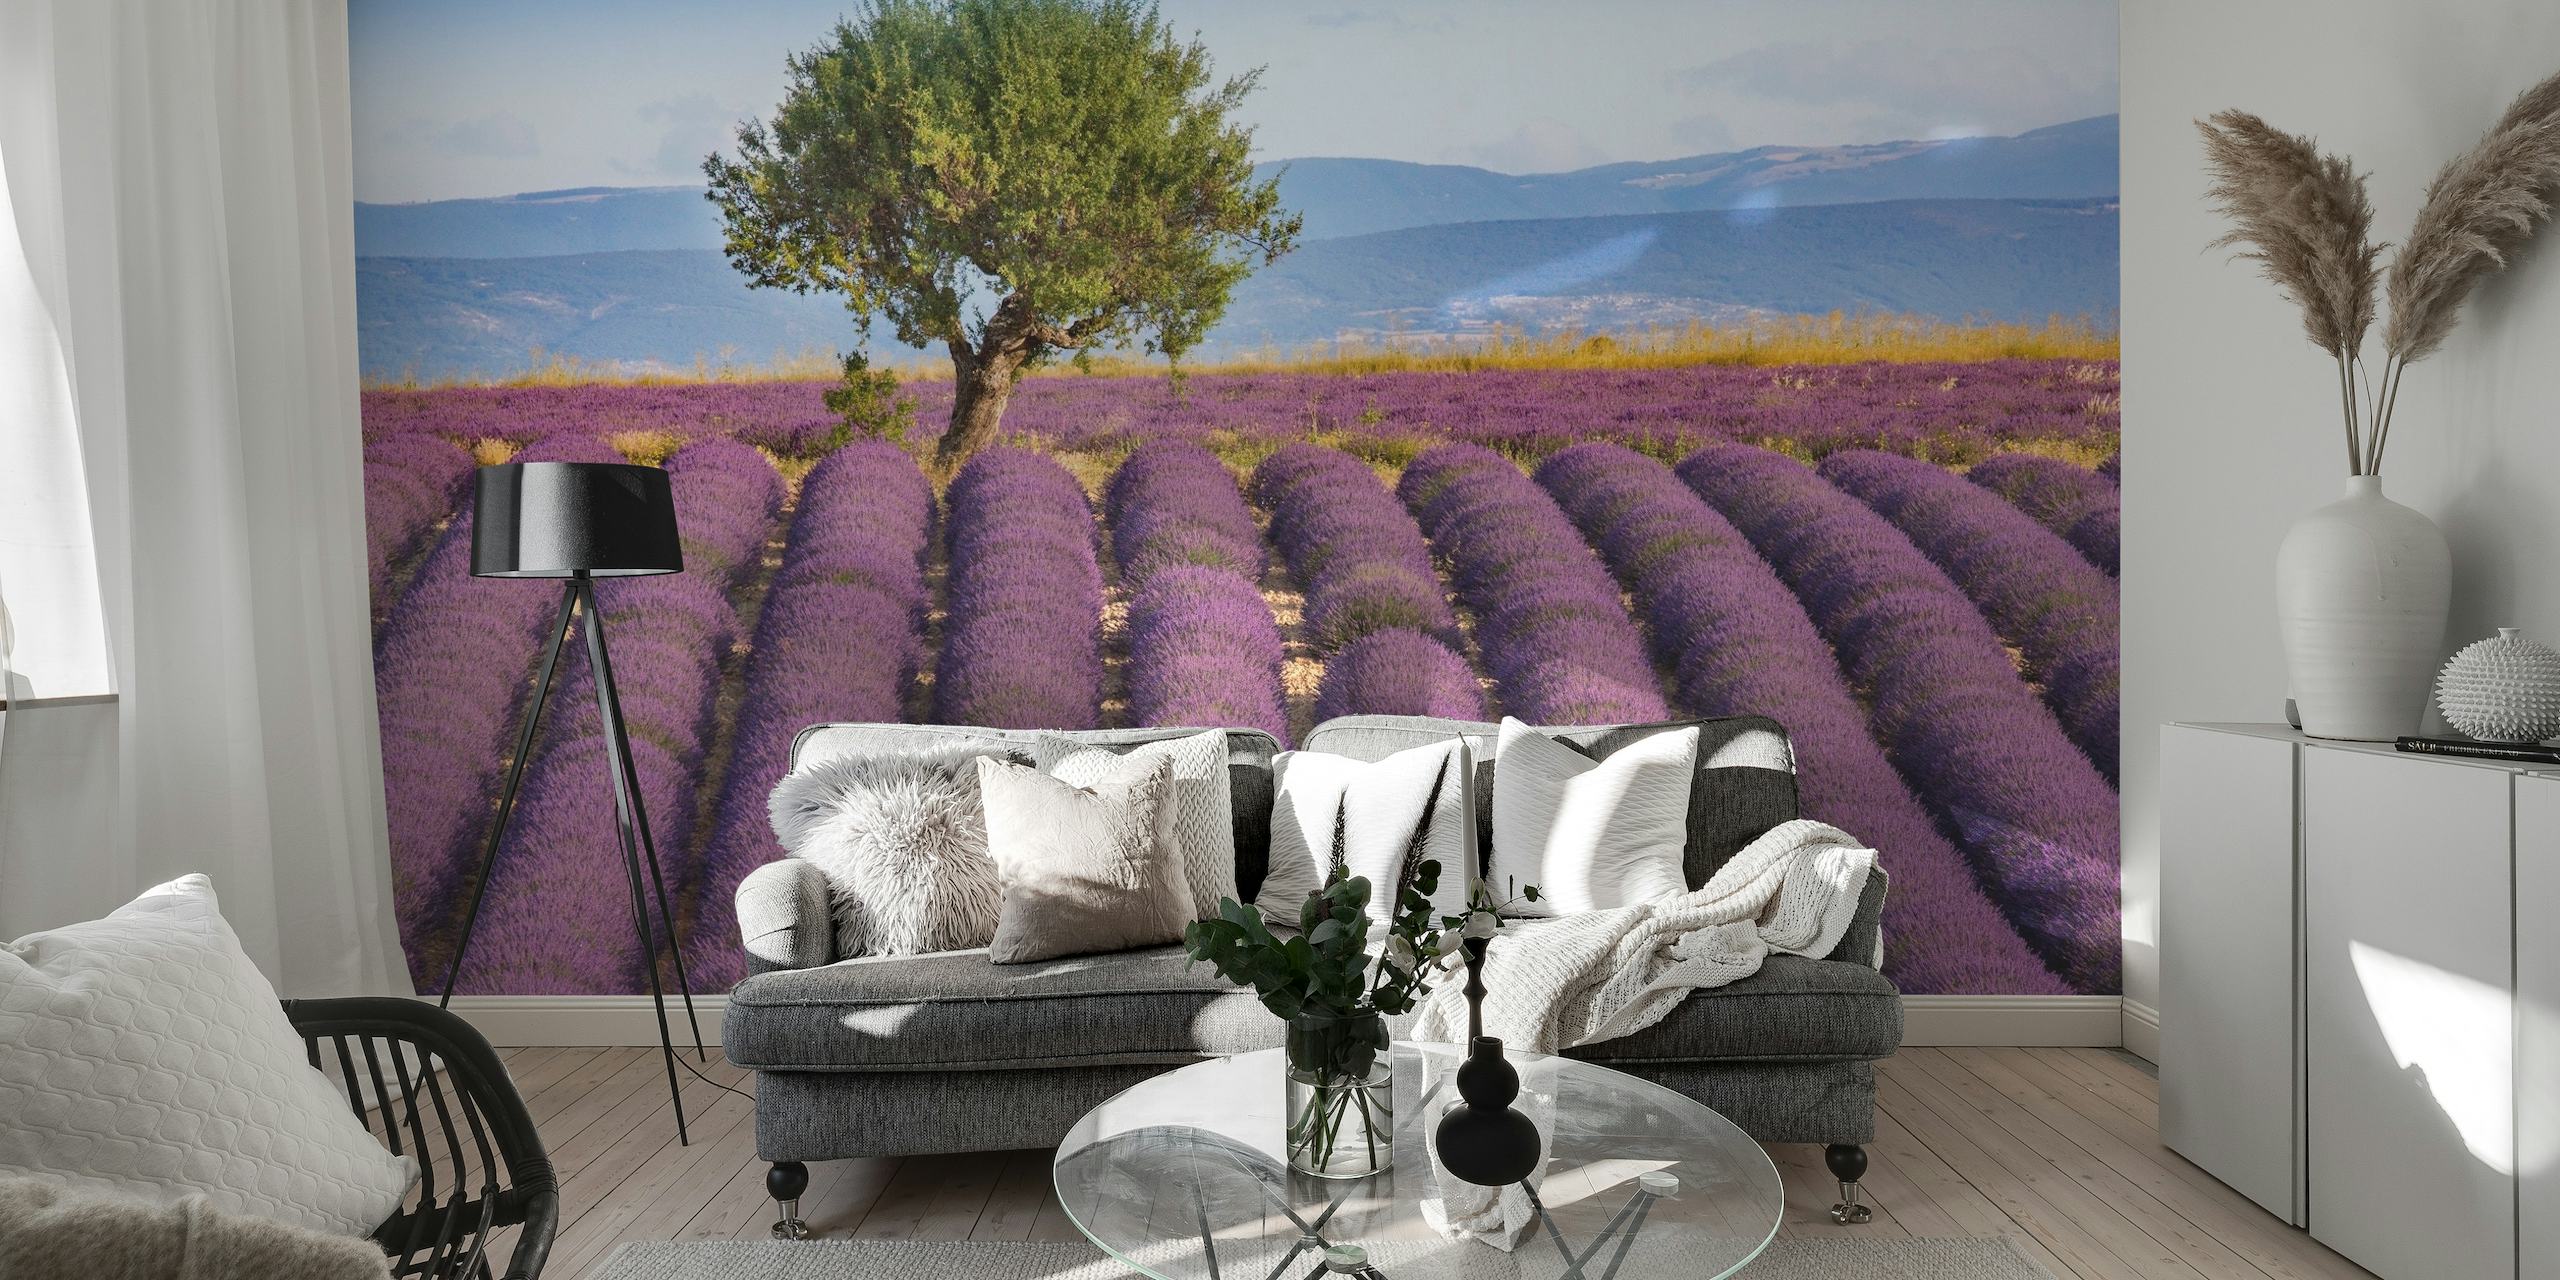 En lugn scen av lavendel Haute Provence med rika lila fält under en klar himmel